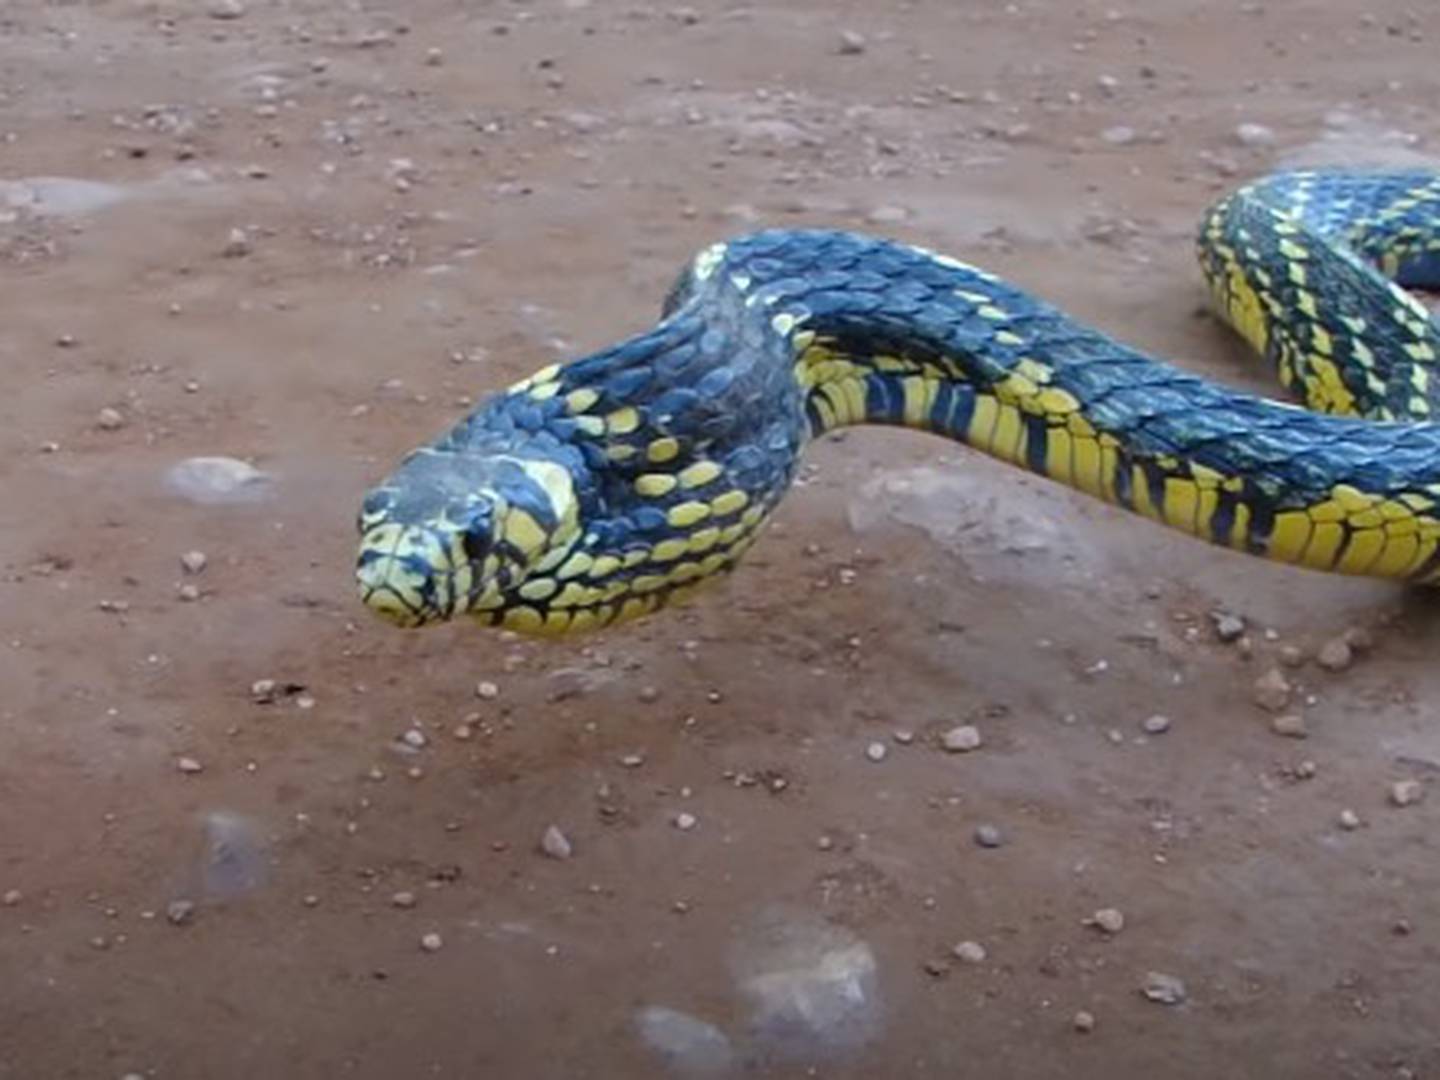 Como prevenir picada de cobra - Save The Snakes